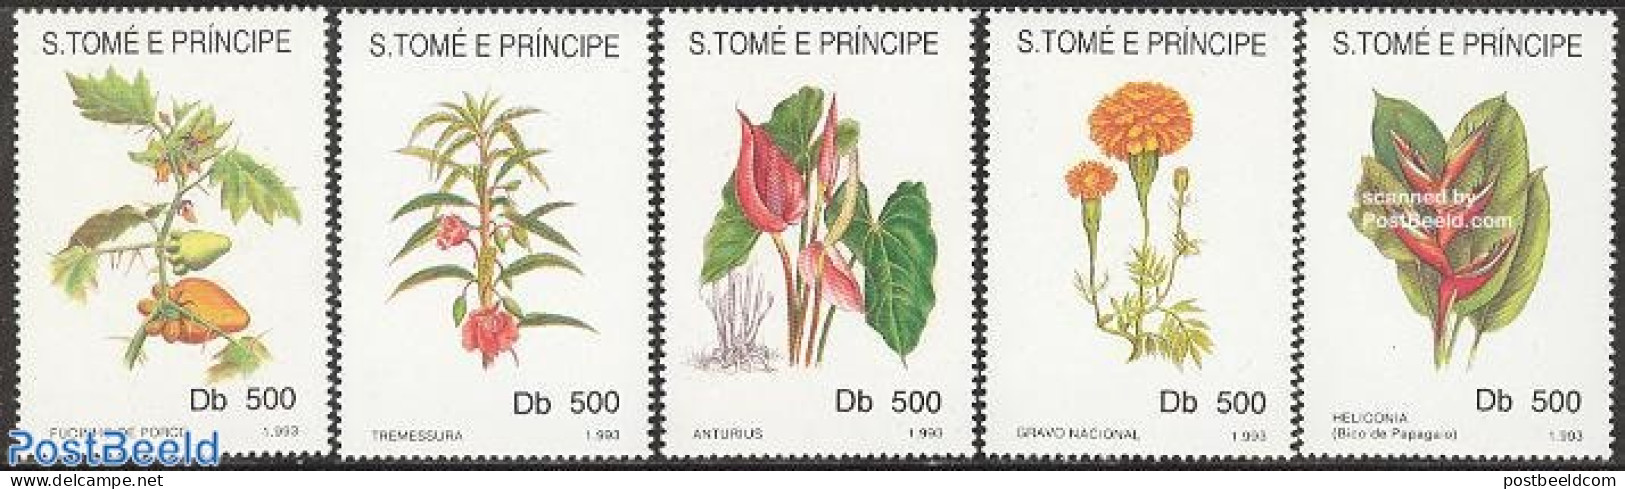 Sao Tome/Principe 1993 Flowers 5v, Mint NH, Nature - Flowers & Plants - São Tomé Und Príncipe